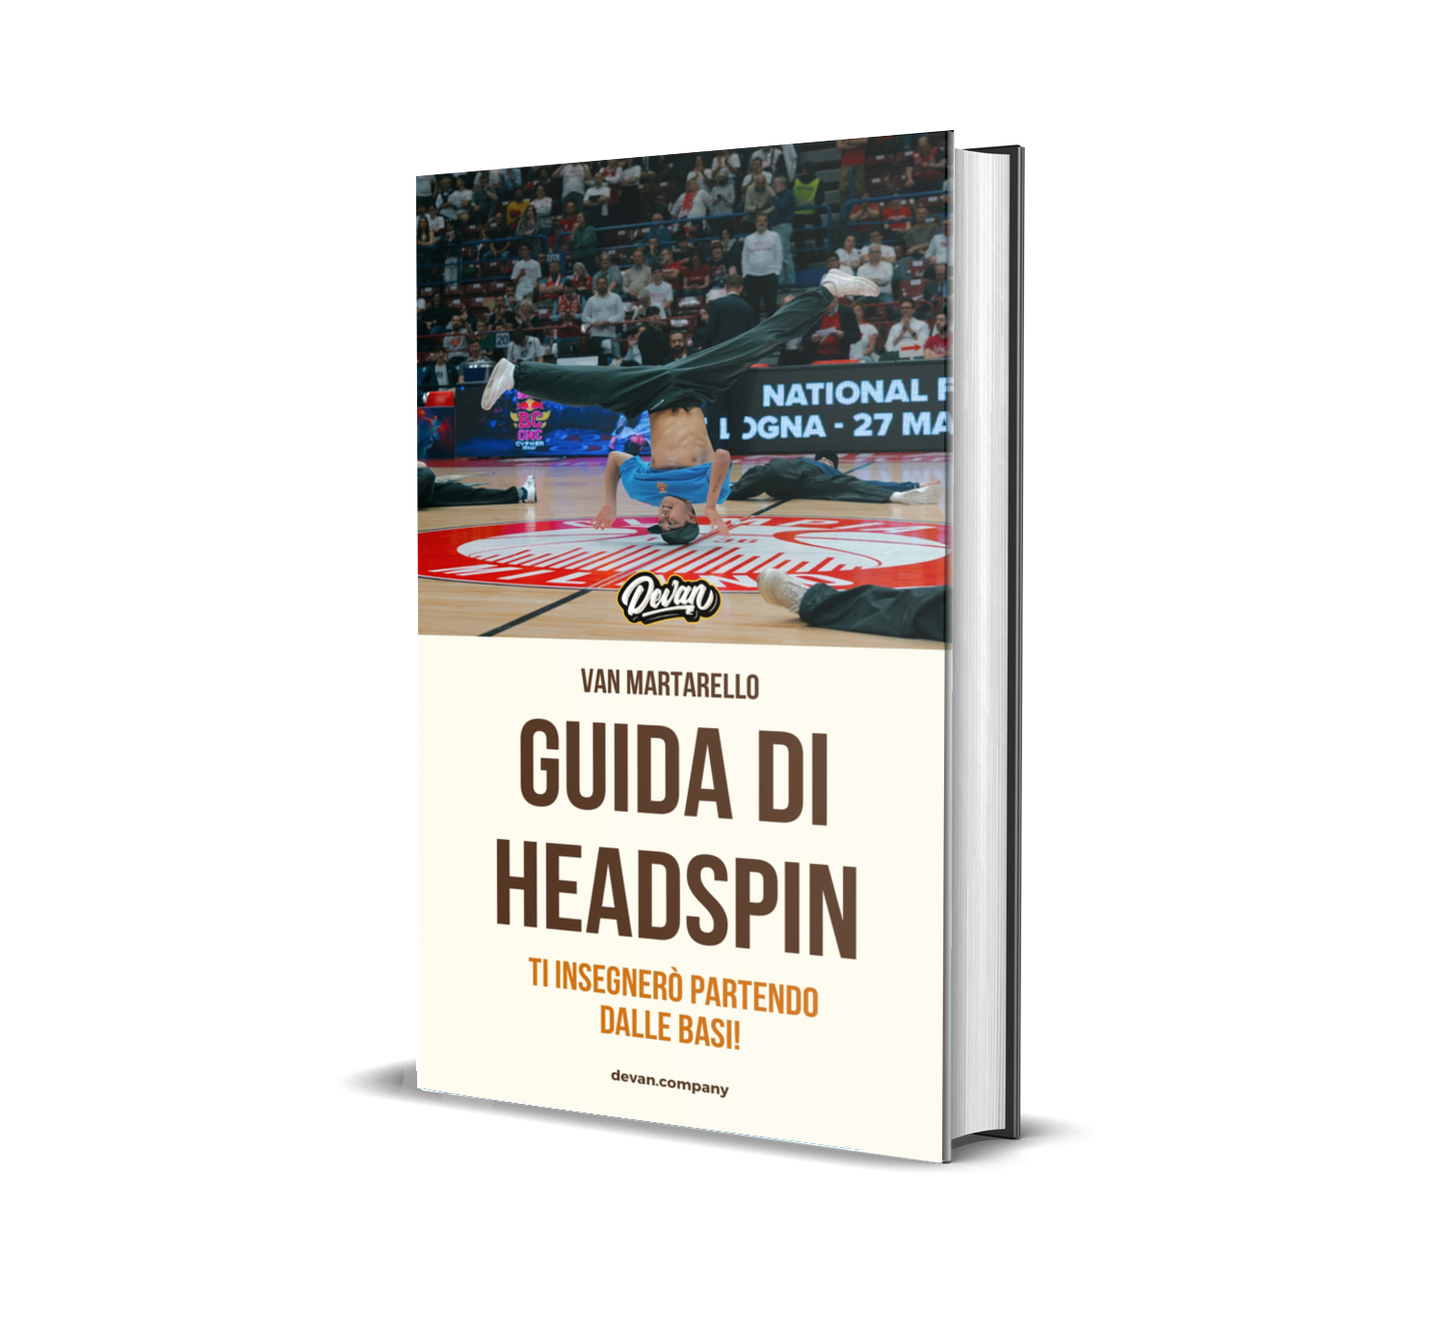 Complete Headspin Guide E-book - Devan